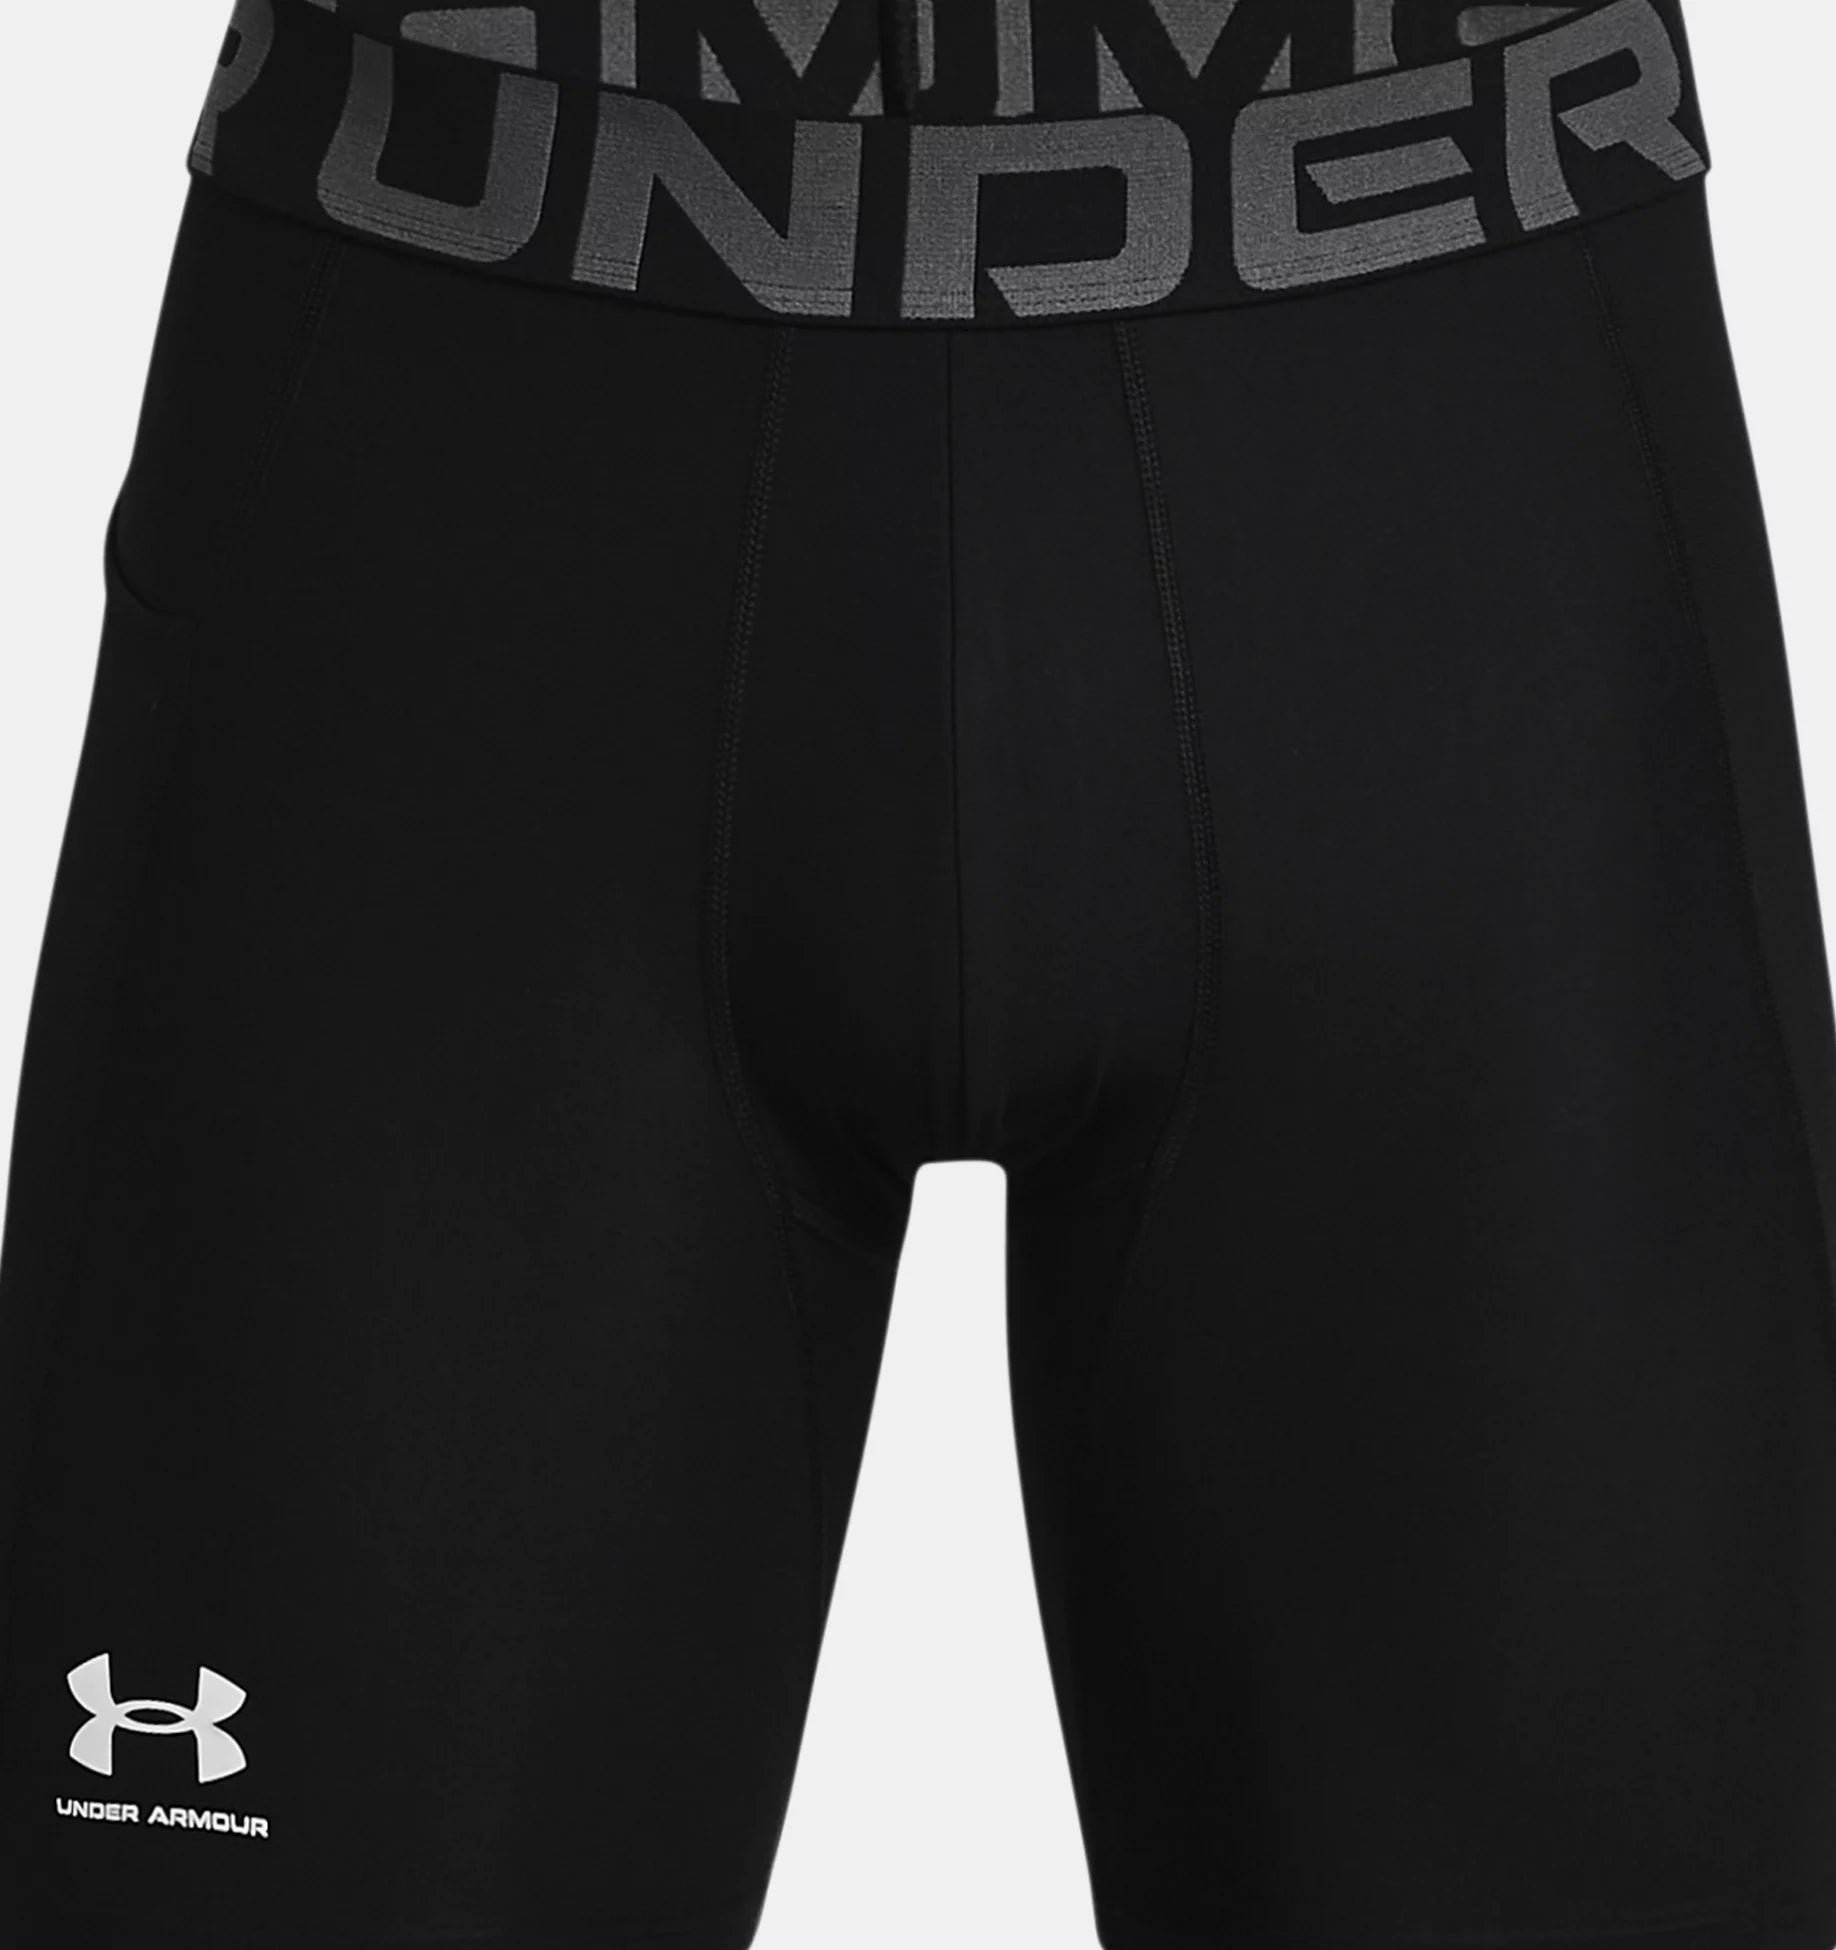 UA Men's HeatGear Armour Compression Shorts